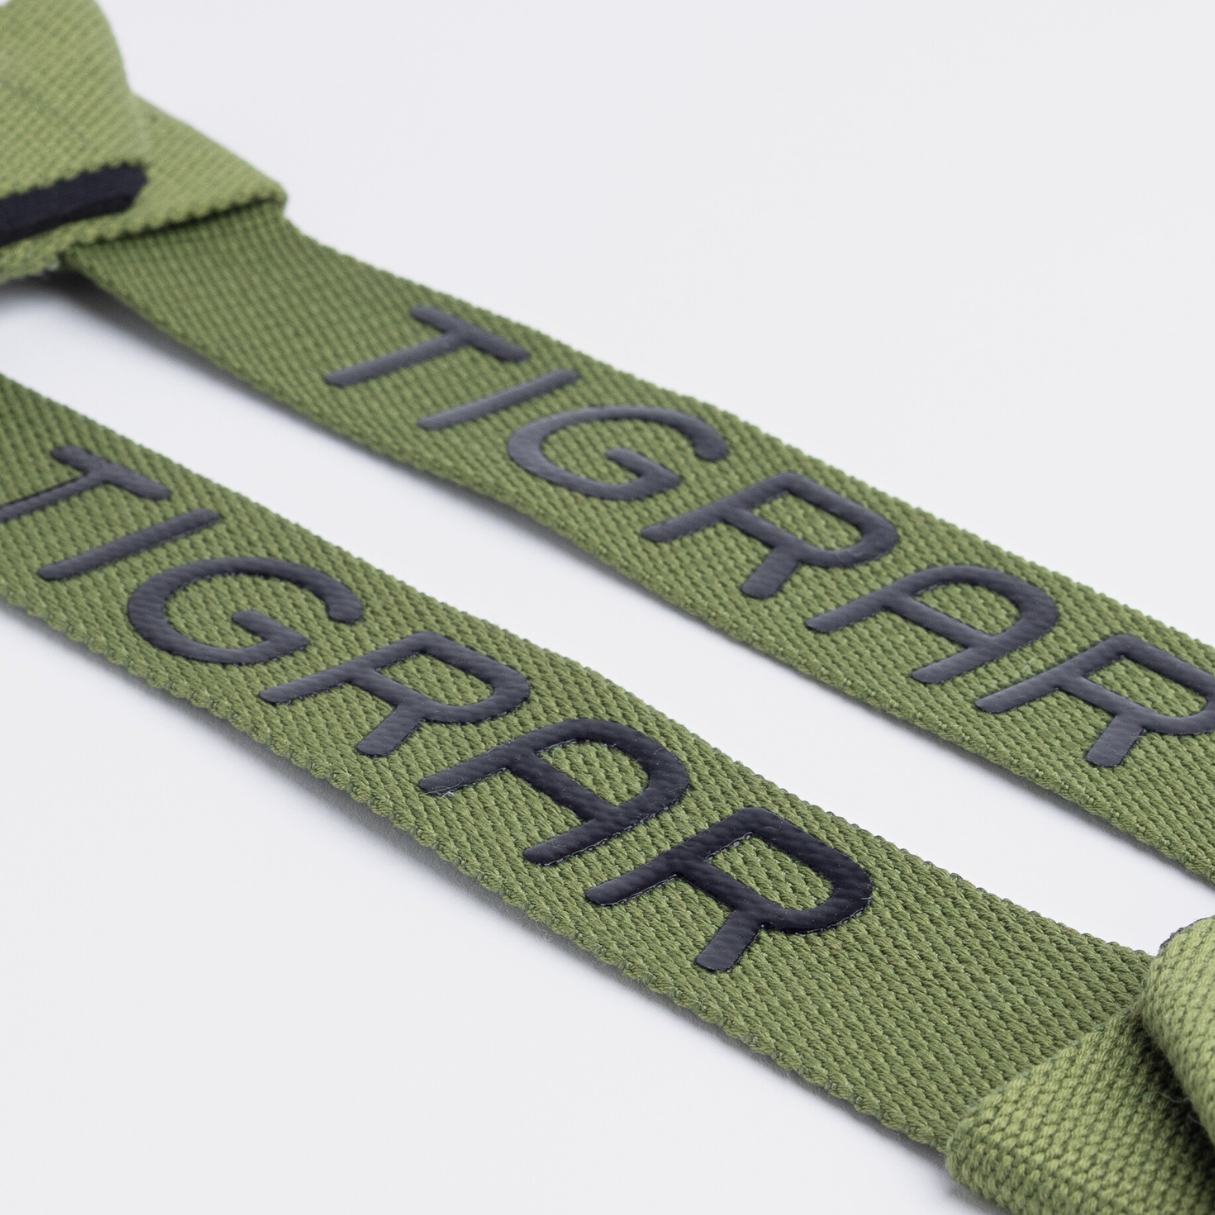 Groene Tigrar lifting straps in close-up, benadrukken duurzaamheid en gemakkelijke verstelbaarheid voor diverse workouts.